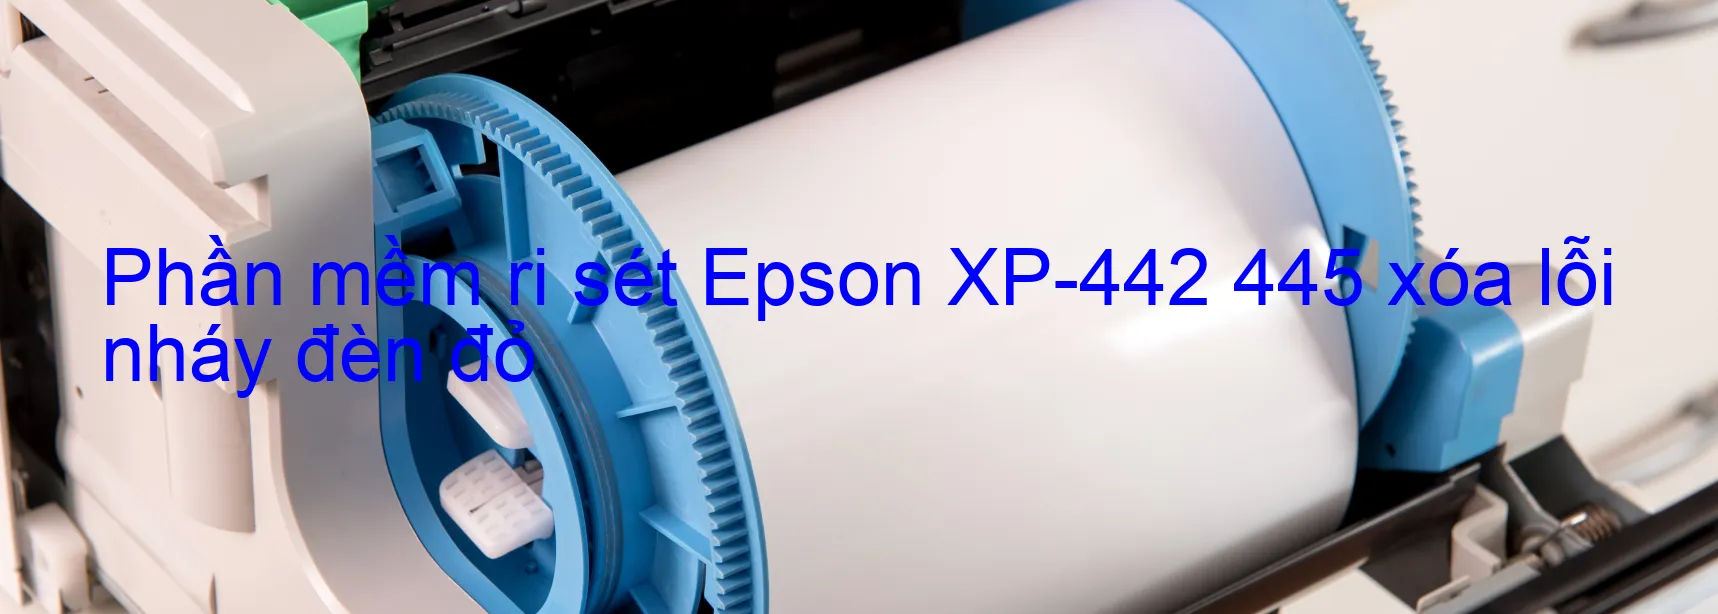 Phần mềm reset Epson XP-442 445 xóa lỗi nháy đèn đỏ